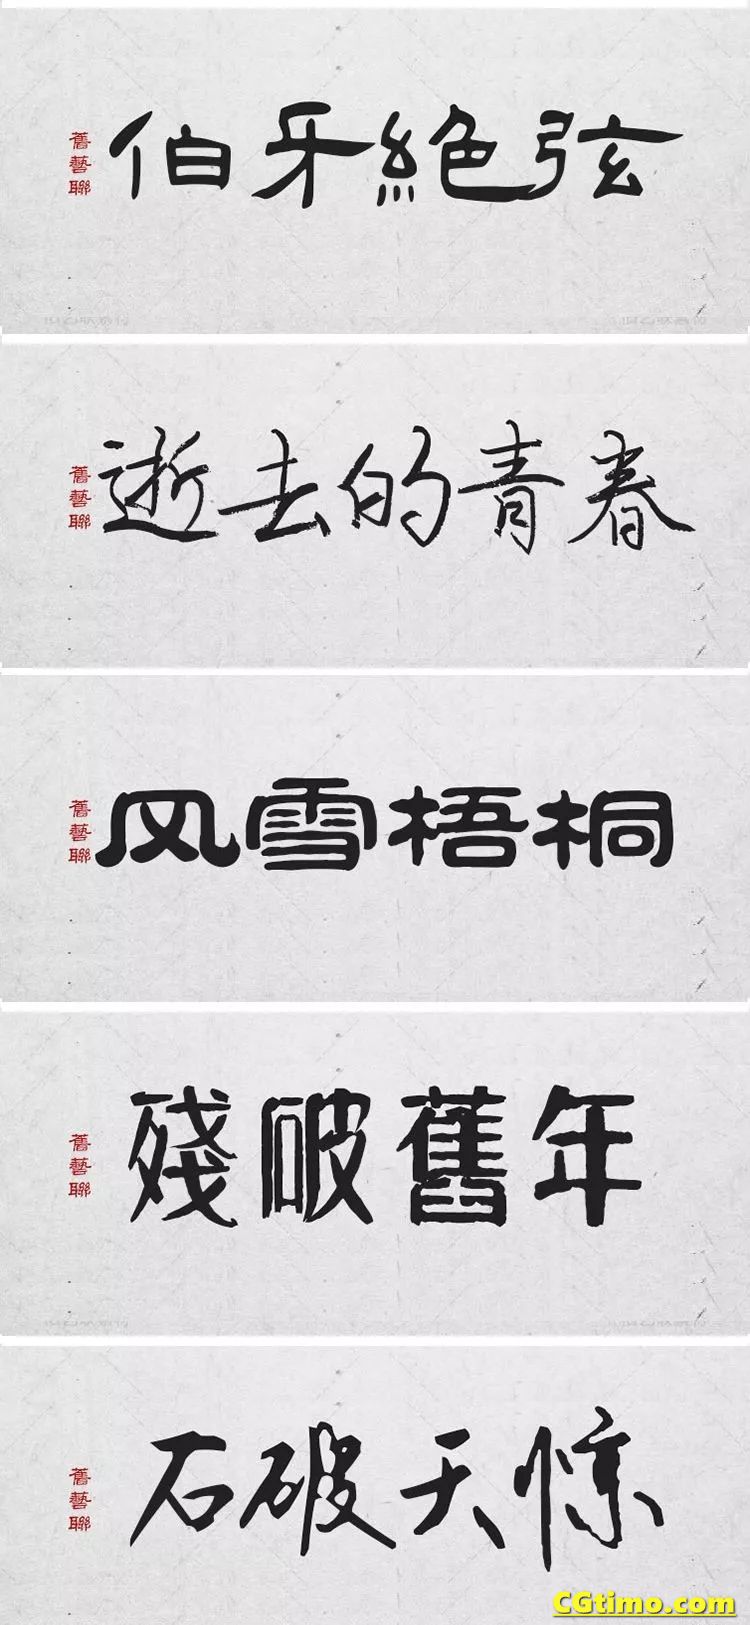 字体-300款中国风高端毛笔字体+笔触合集 字体下载 第18张